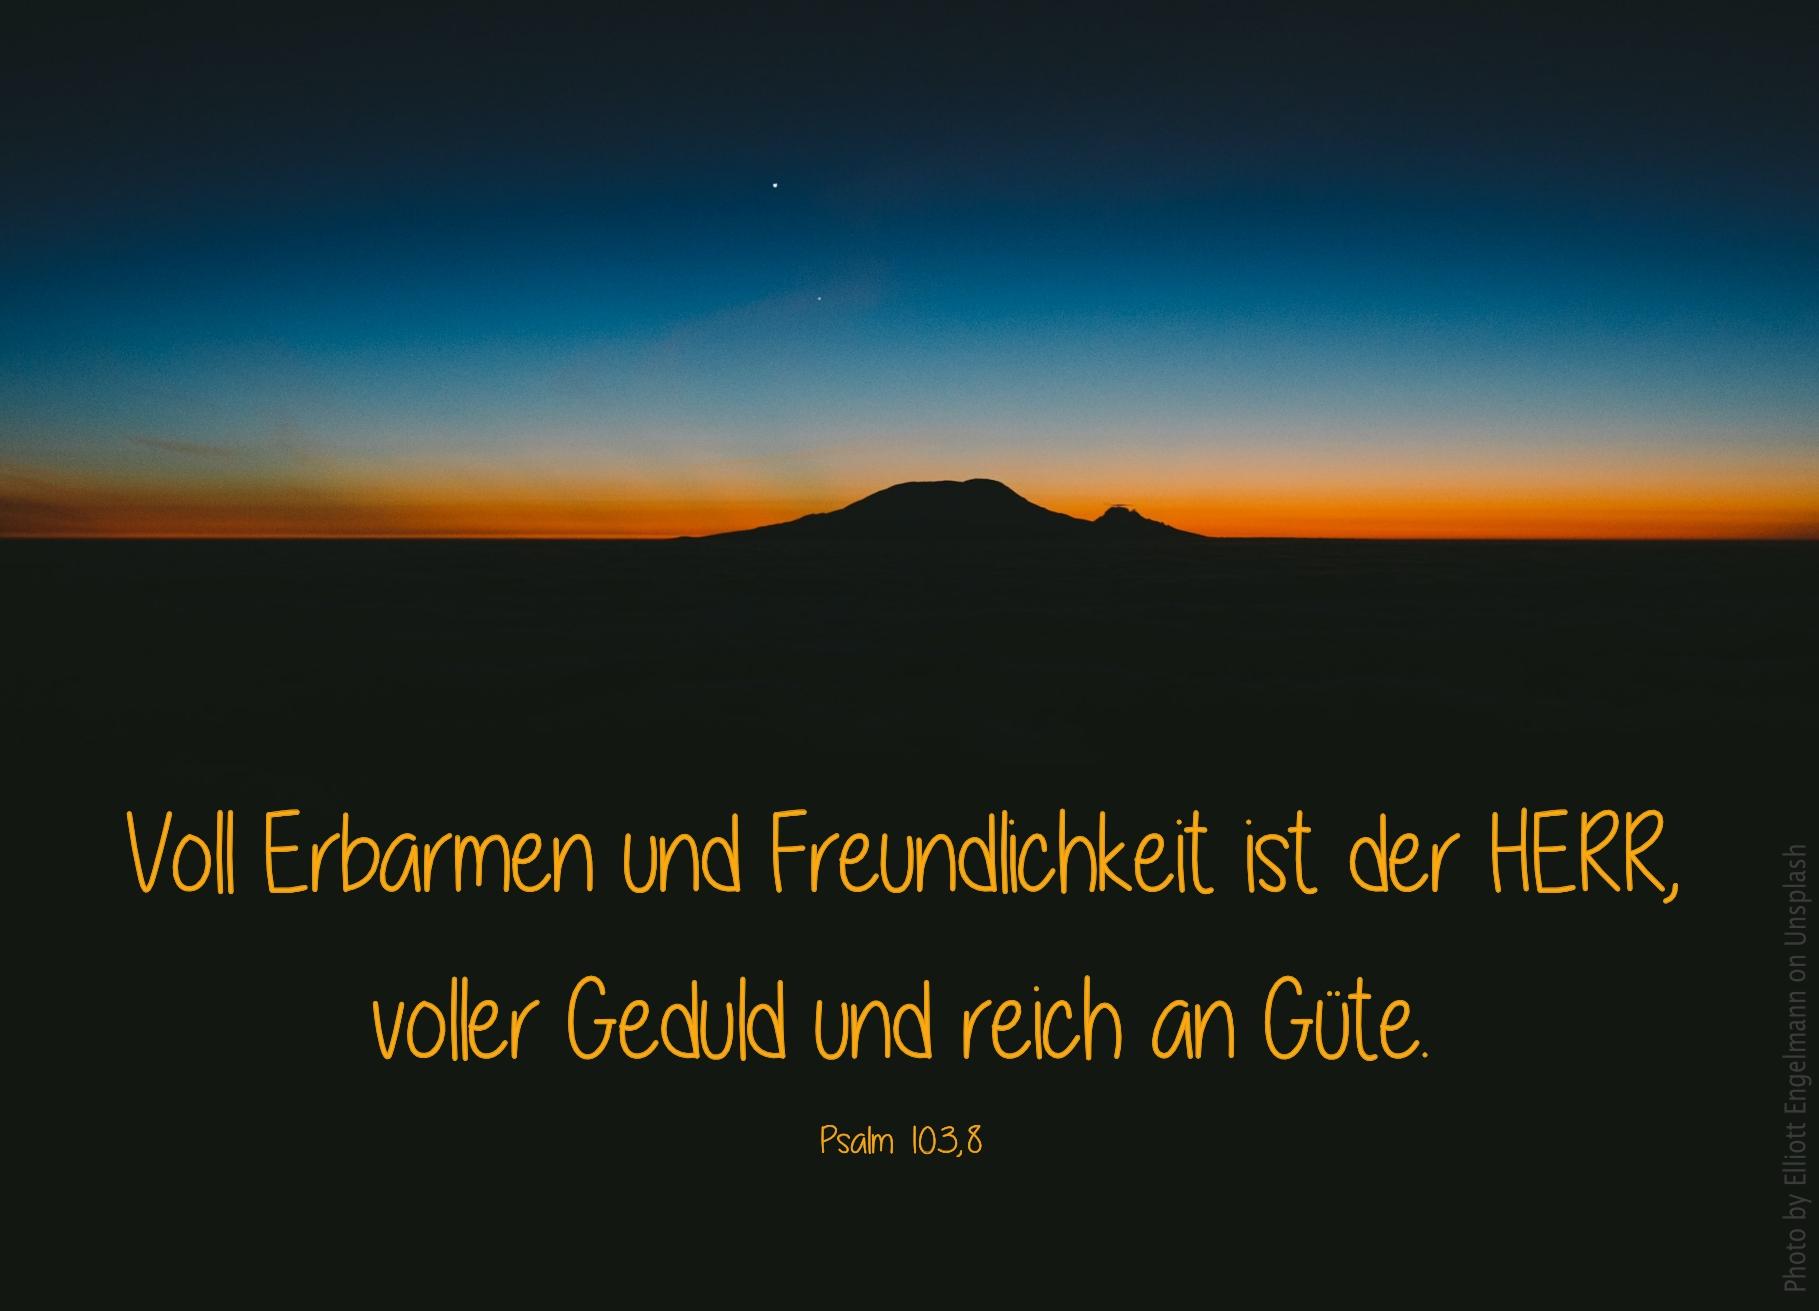 alt="bergsilhouette_im_dunkeln_erwartet_bibelhoerbuch_jesus_der_mensch"